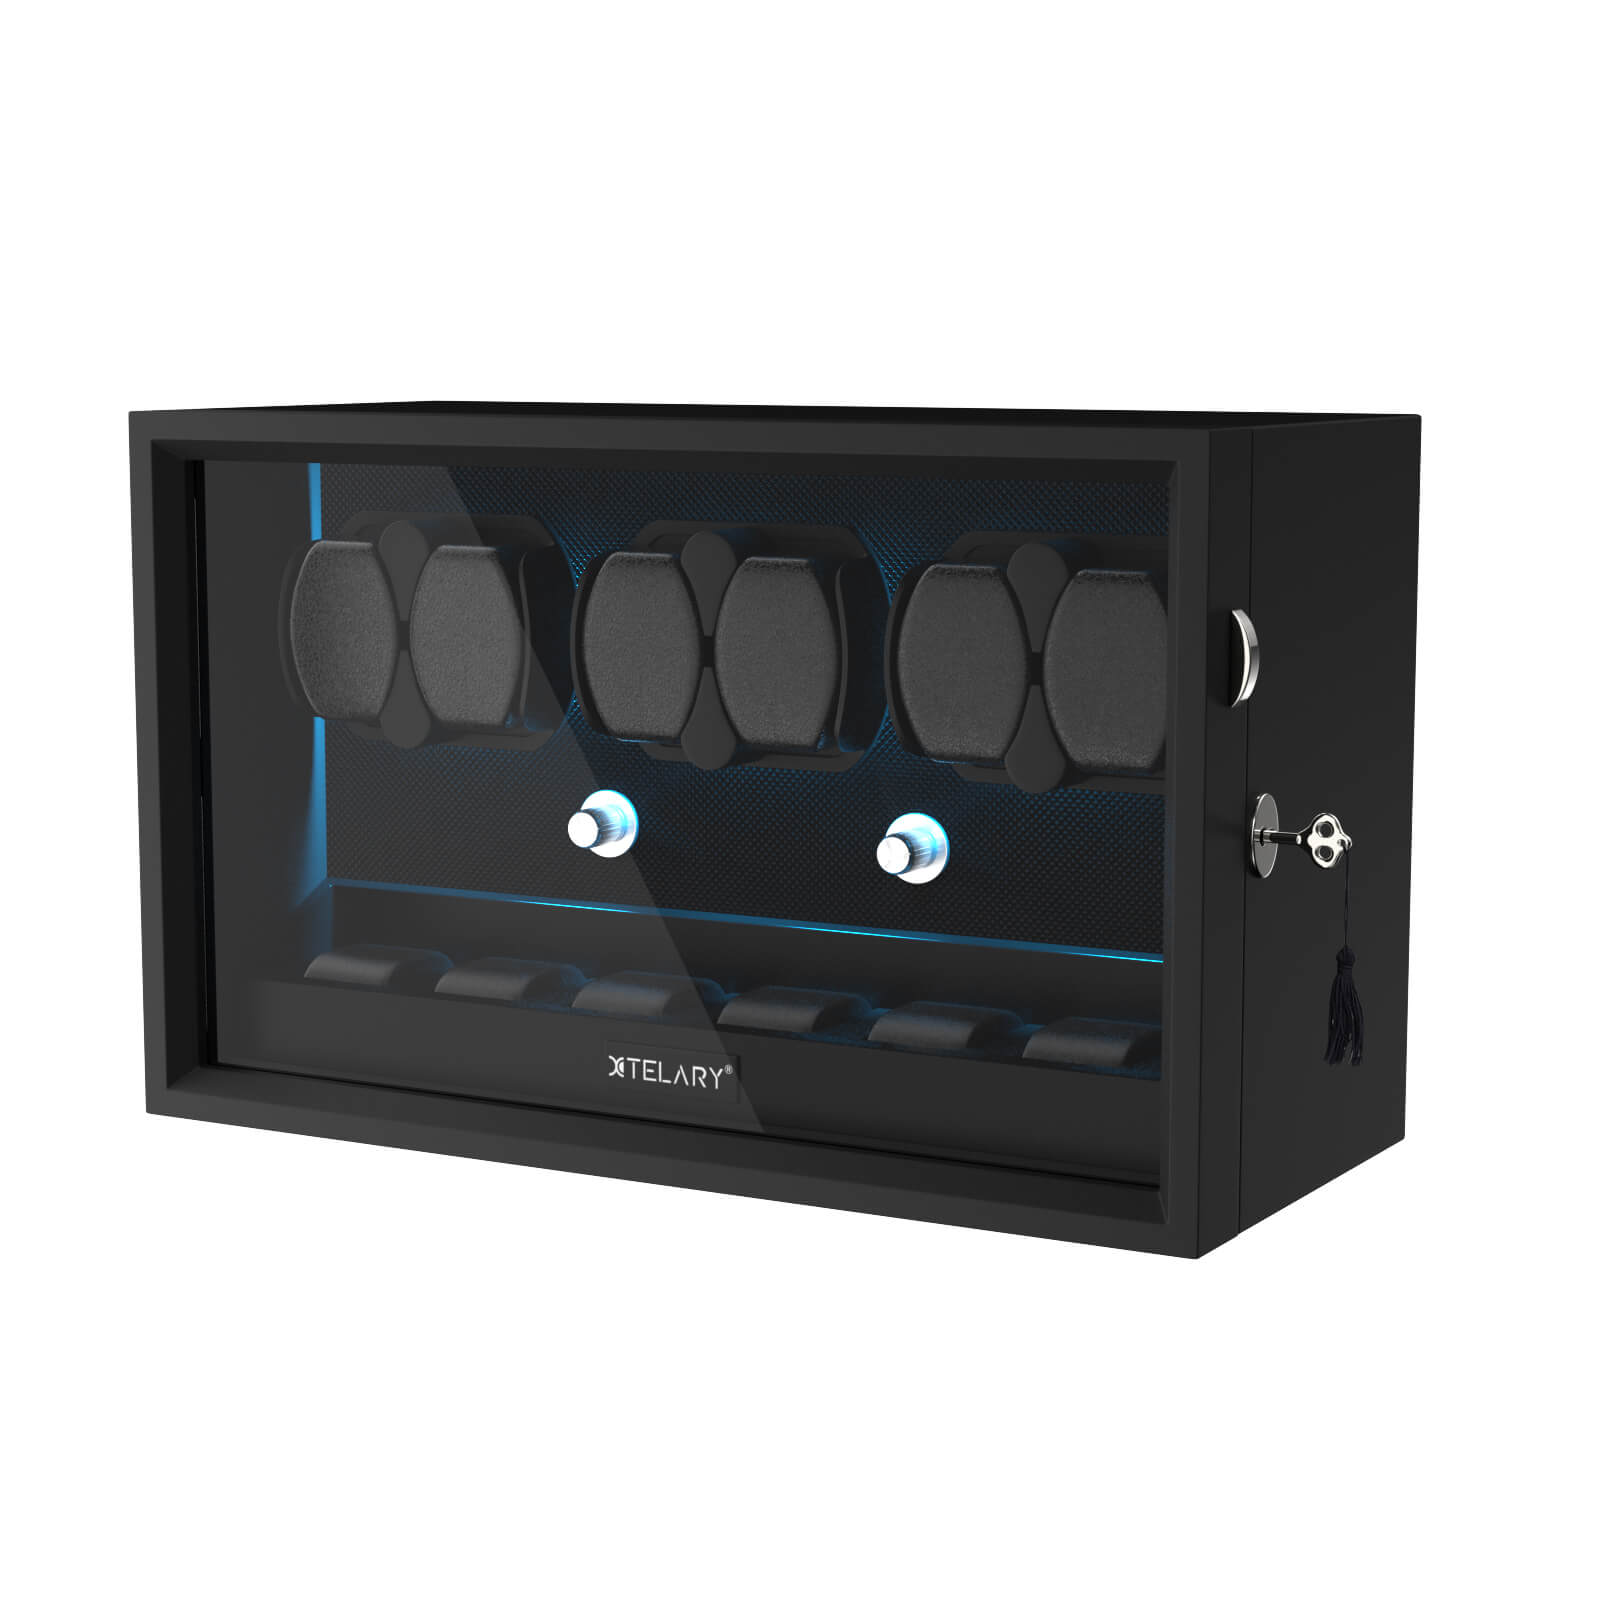 6 Remontoirs de Montres pour Montres Automatiques avec 6 Rangements Supplémentaires Lumière LED Bleue Aurora - Noir